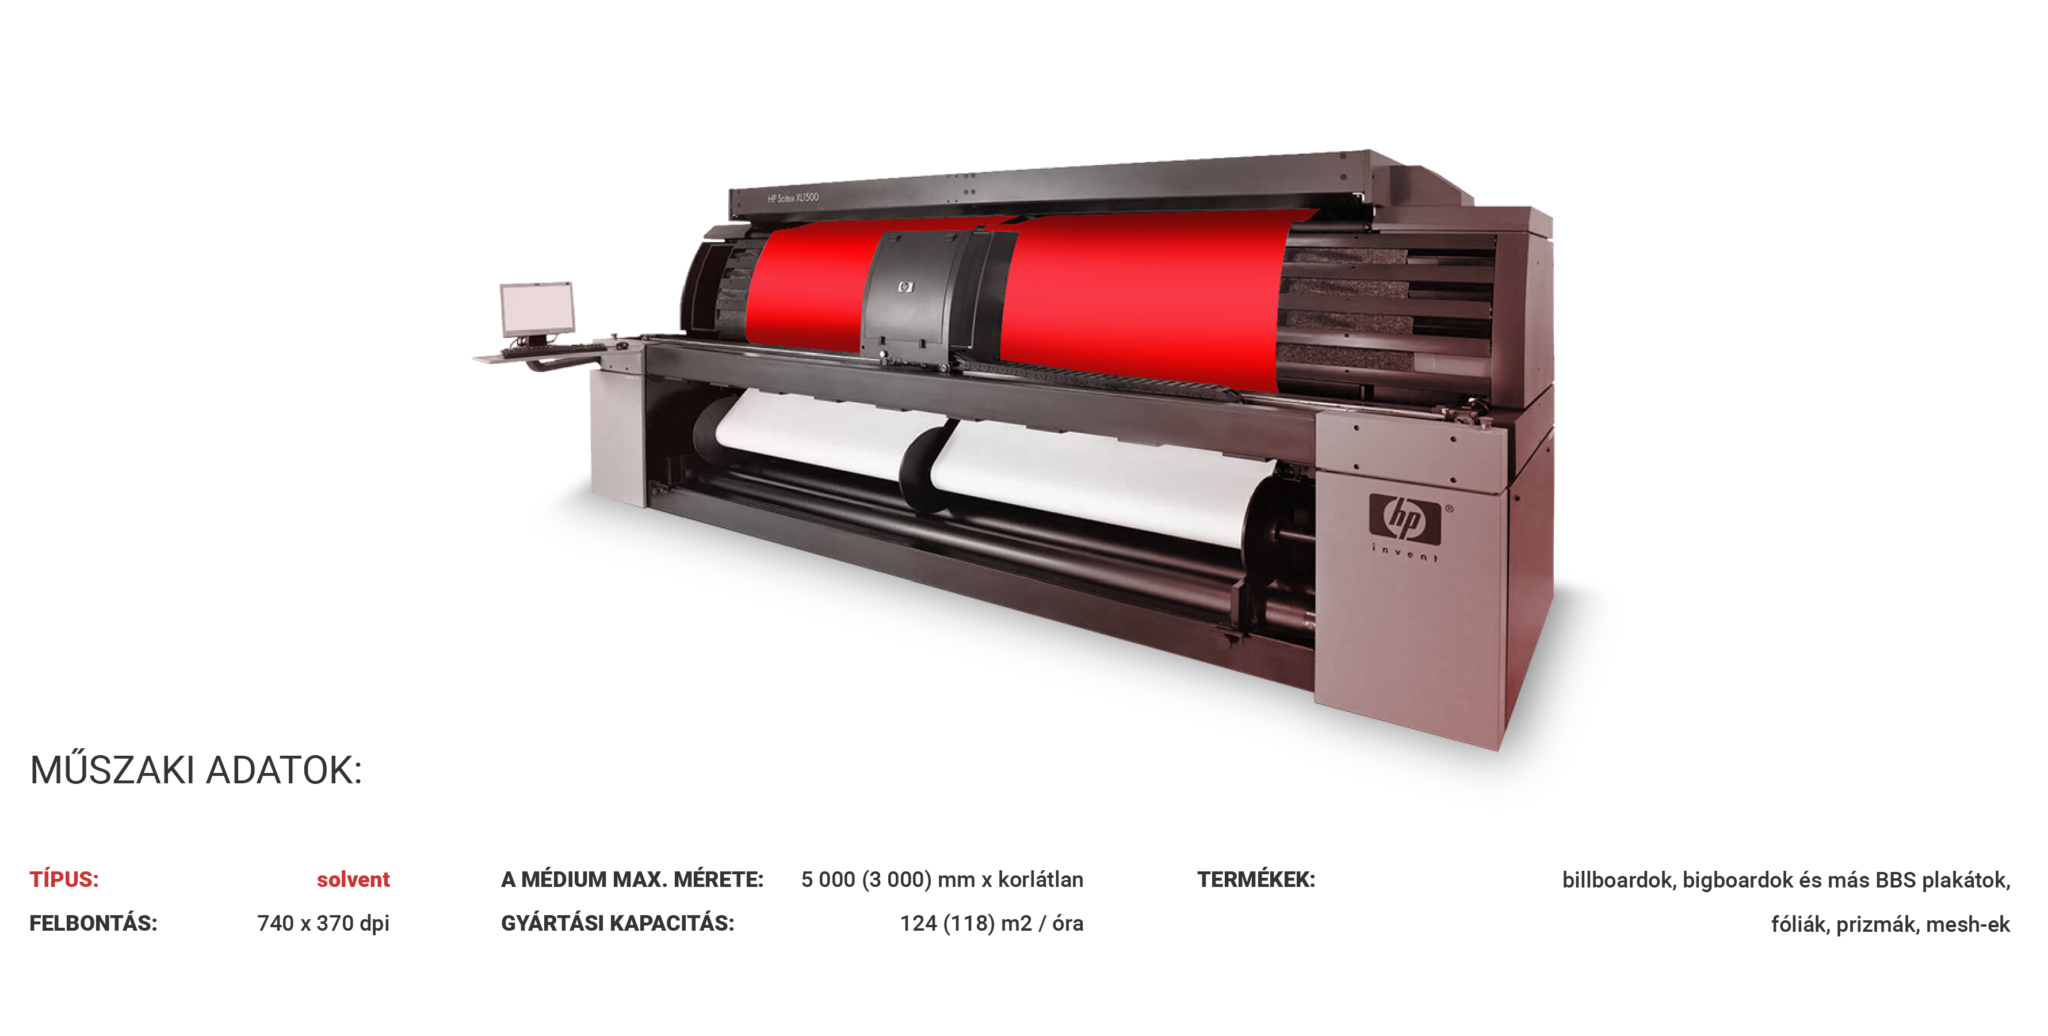 HP SCITEX XL JET 1500 www.kpkprint.hu